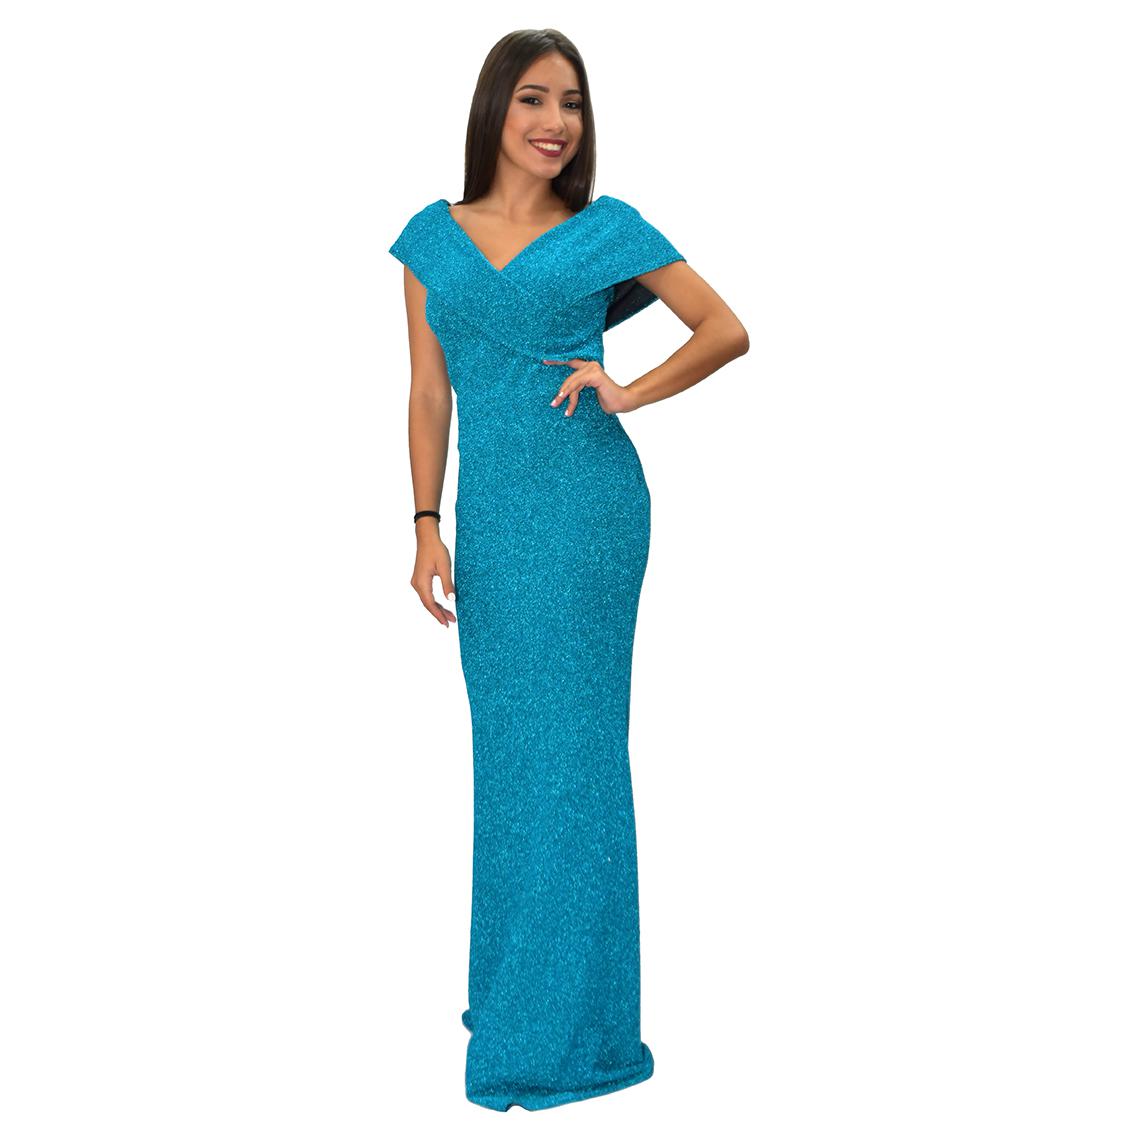 Vestido largo azul turquesa poliéster elastano - Tienda Atrevida | Vestidos  de Fiesta y Celebraciones Las Palmas, Vestidos largos, Tallas Grandes